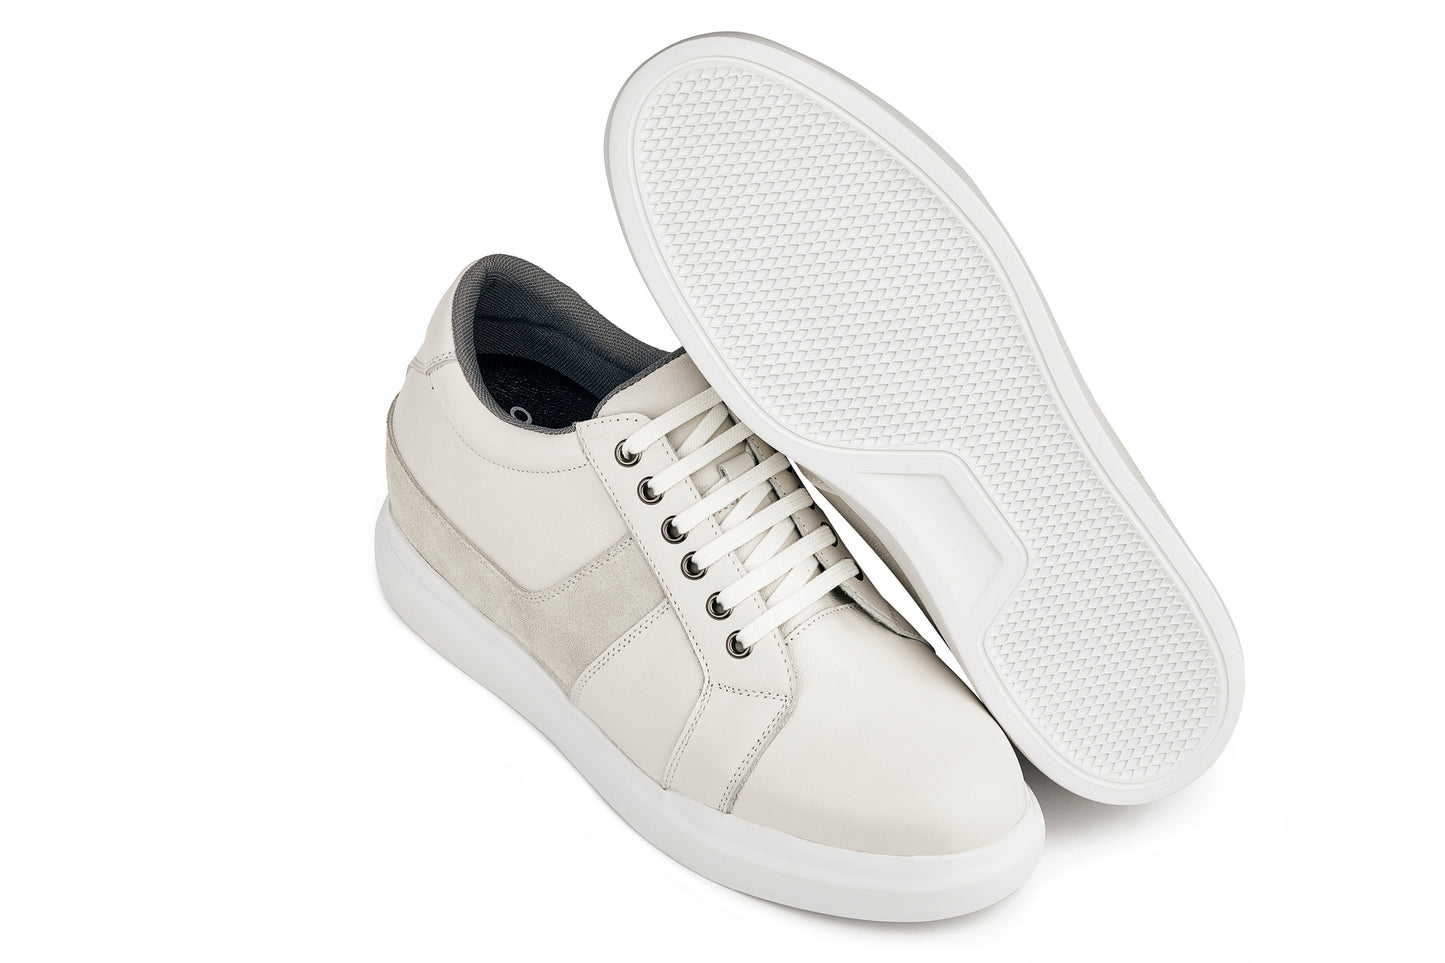 CALTO - K1531 - بطول 3 بوصات (أبيض فاتح) - حذاء رياضي جلدي خفيف الوزن